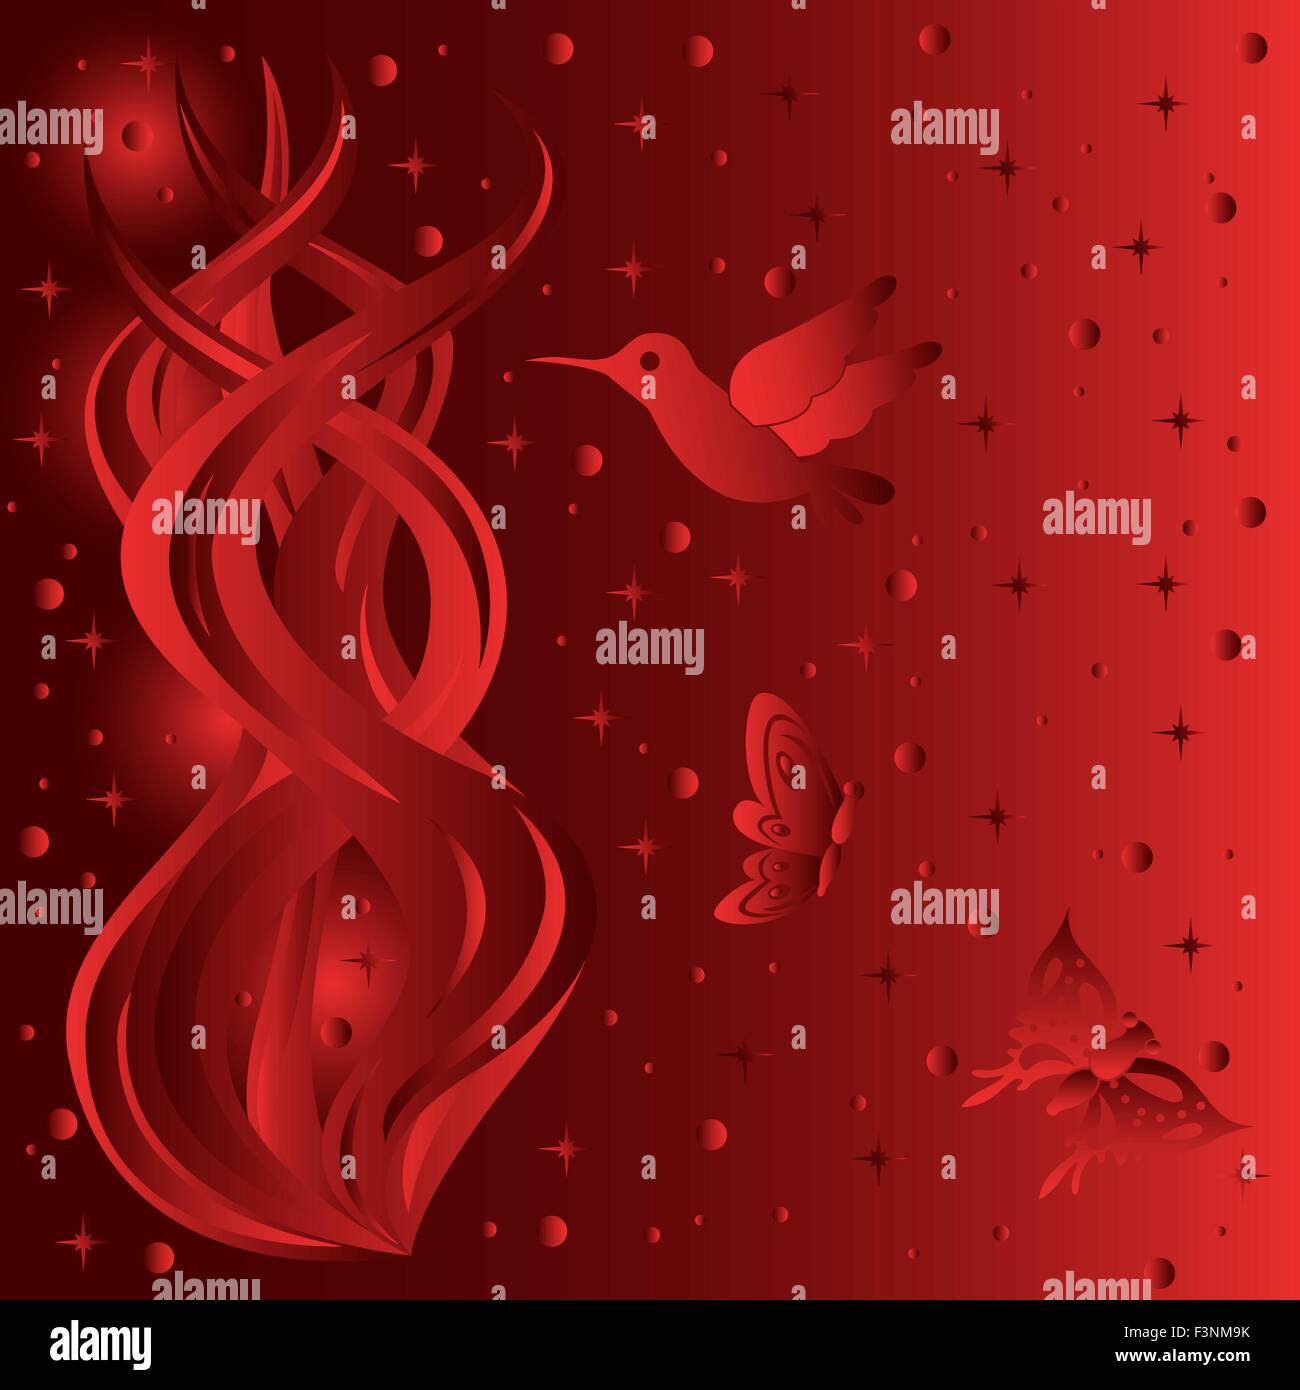 Phantasmagorischer floral und Tier Zusammensetzung mit Sternenhimmel Hintergrund, Handzeichnung Vektor-Illustration in roten Farbtönen Stock Vektor